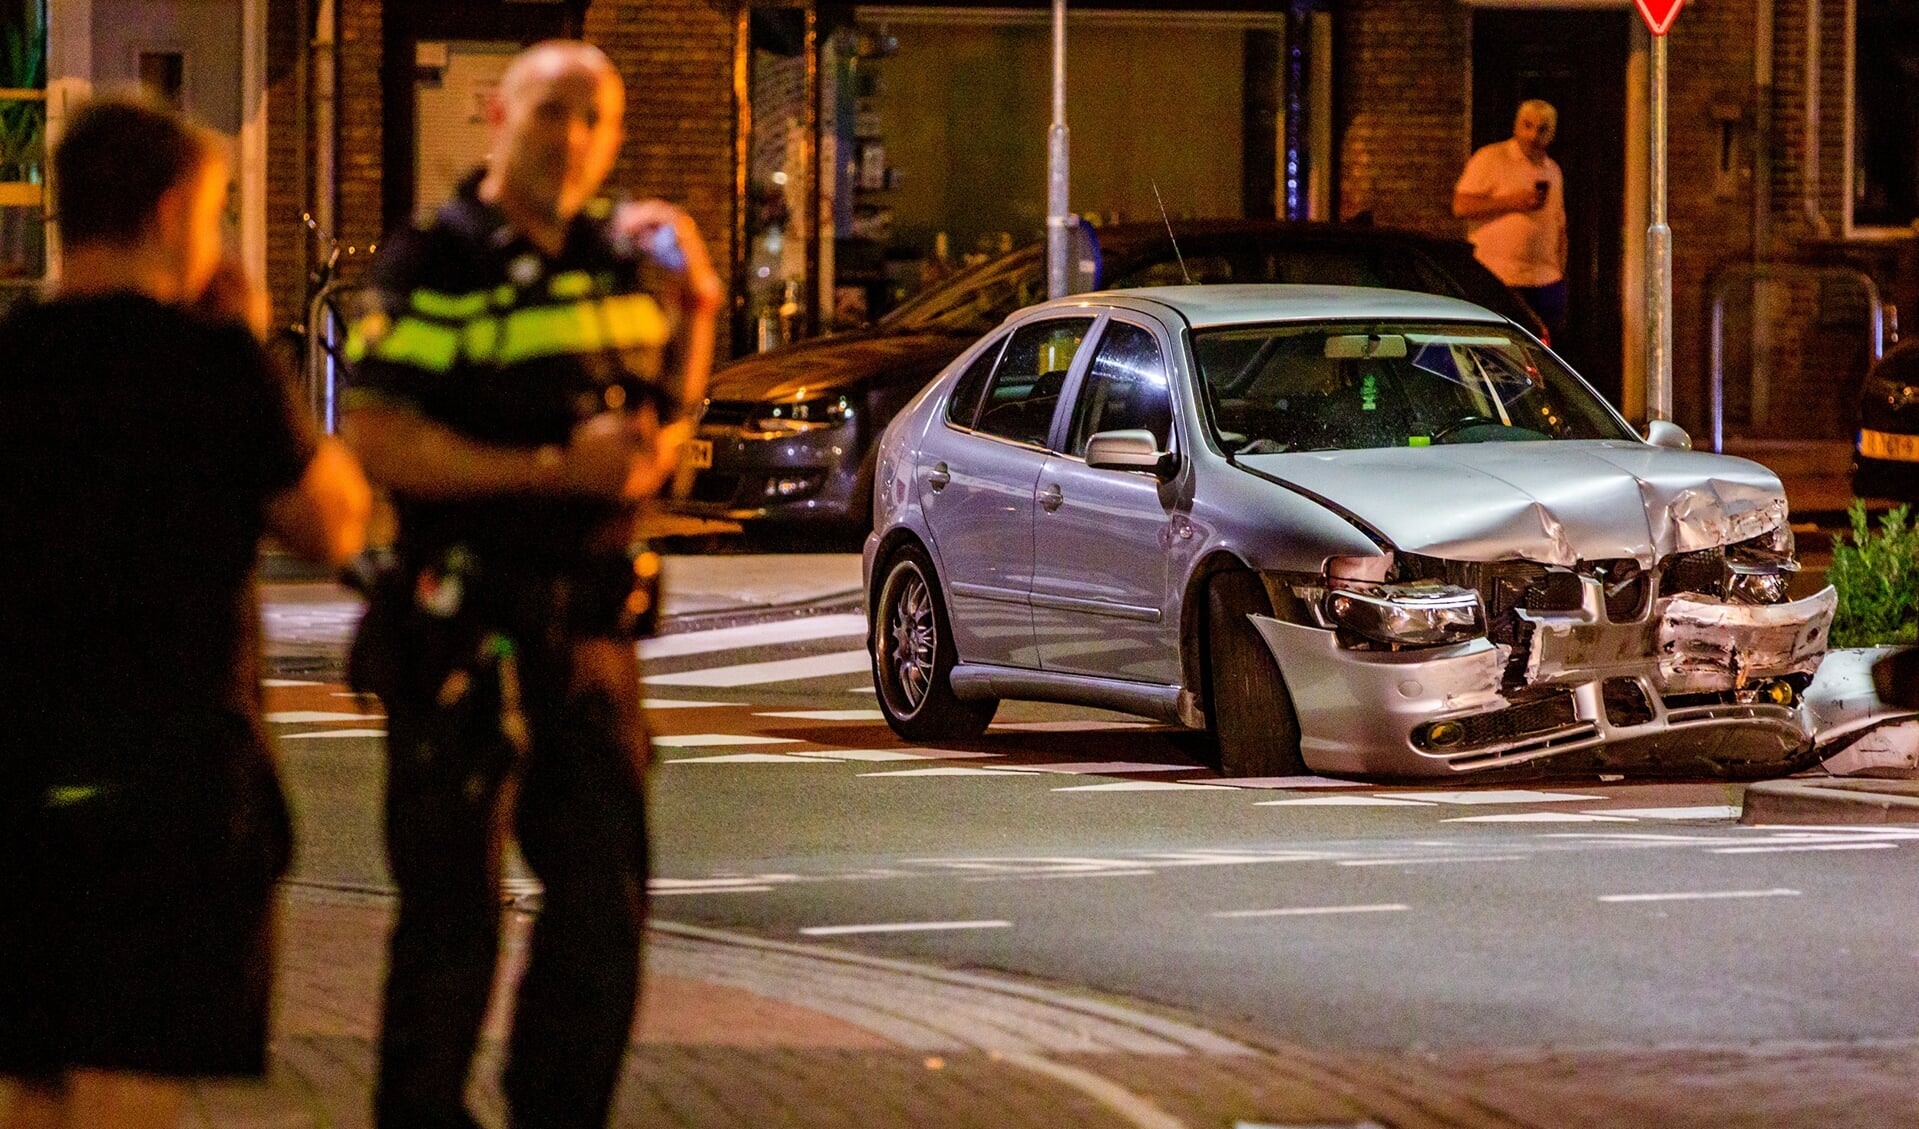 Het ongeluk bij Vida in de nacht van 1 op 2 augustus is de katalysator van de hernieuwde discussie over snelheidshandhaving in Hilversum. Foto: Bastiaan Miché